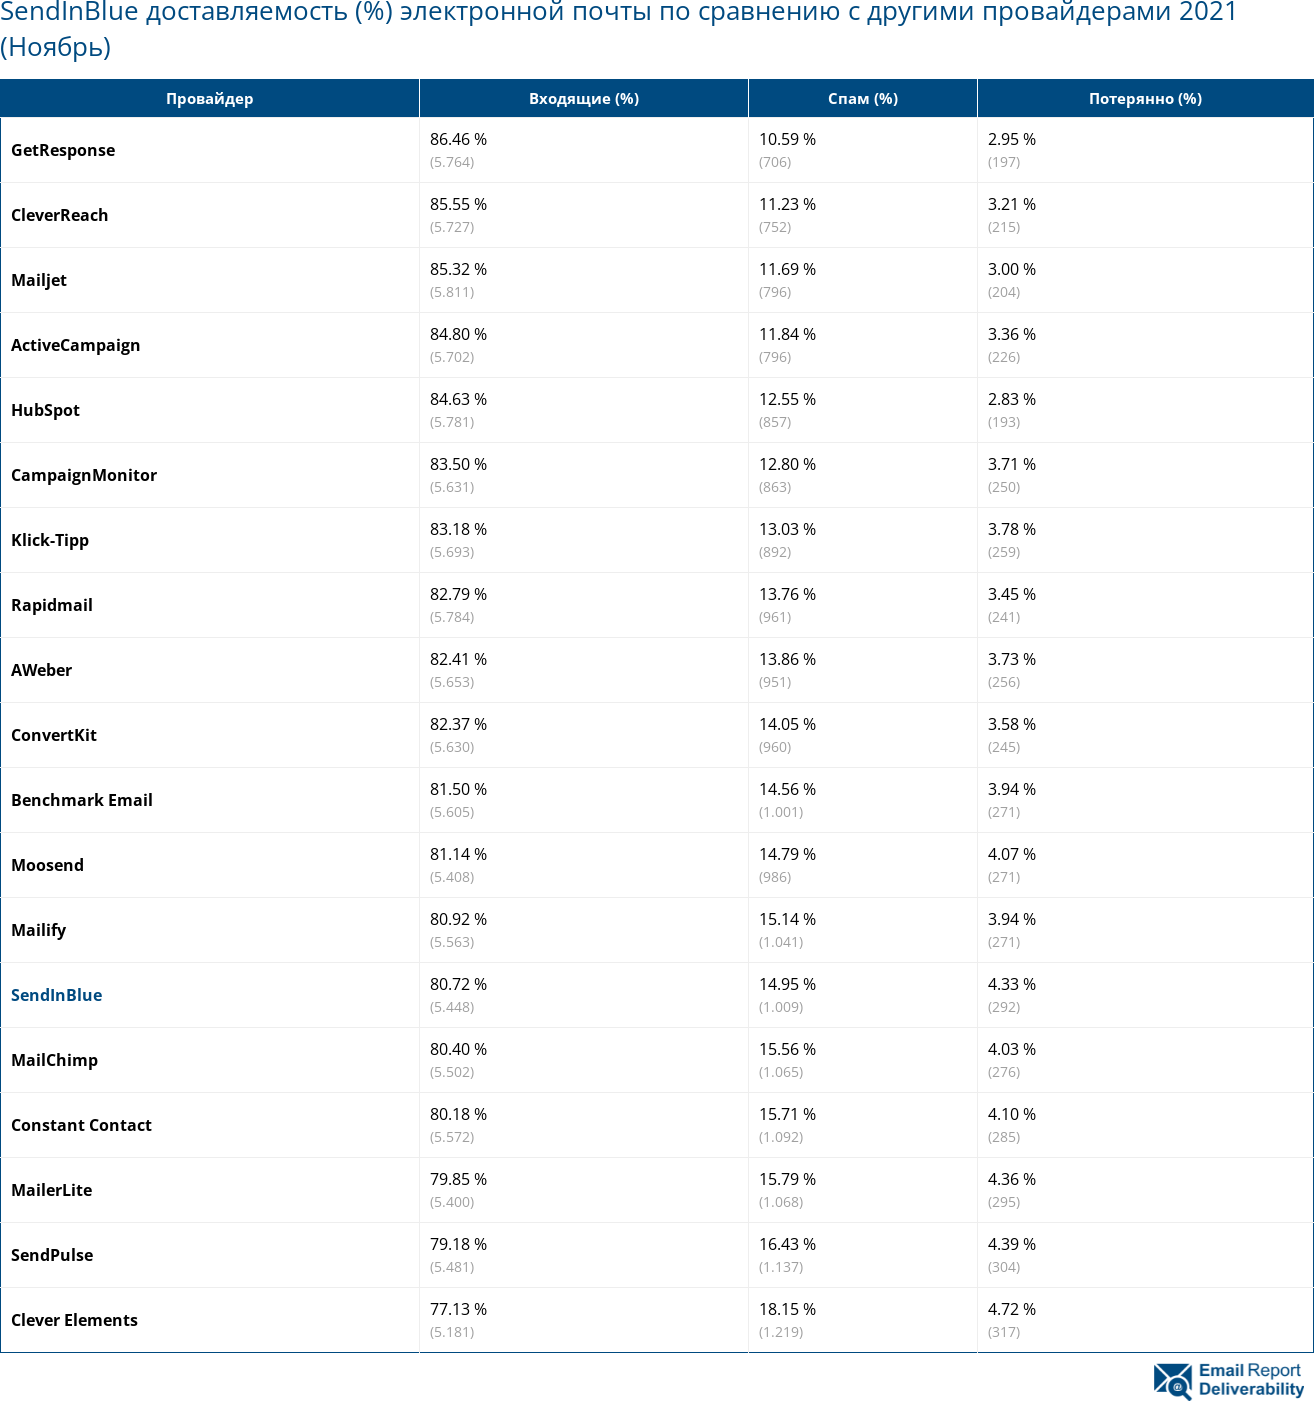 SendInBlue доставляемость (%) электронной почты по сравнению с другими провайдерами 2021 (Ноябрь)